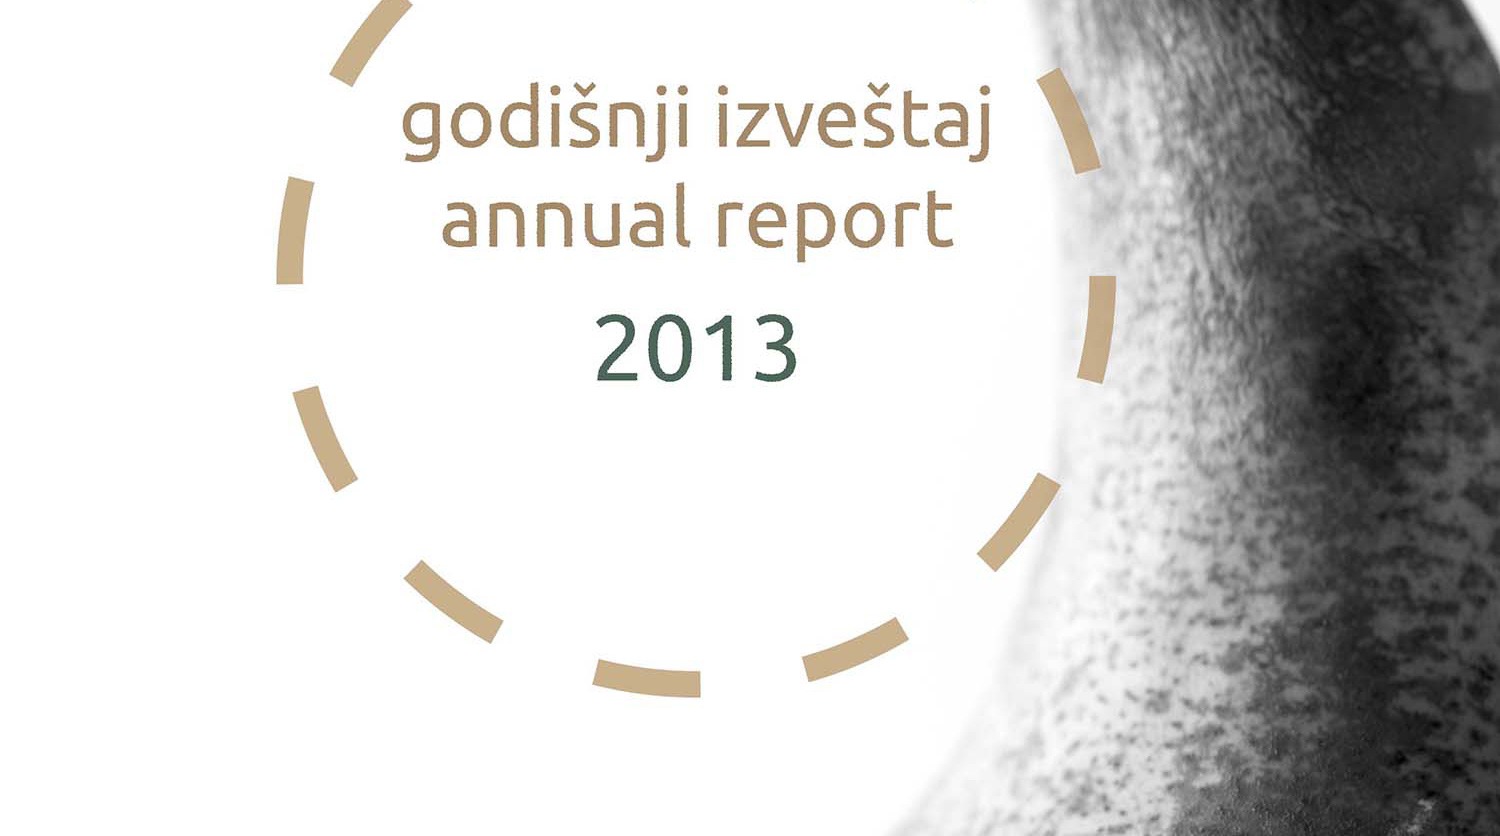 16th Annual Report